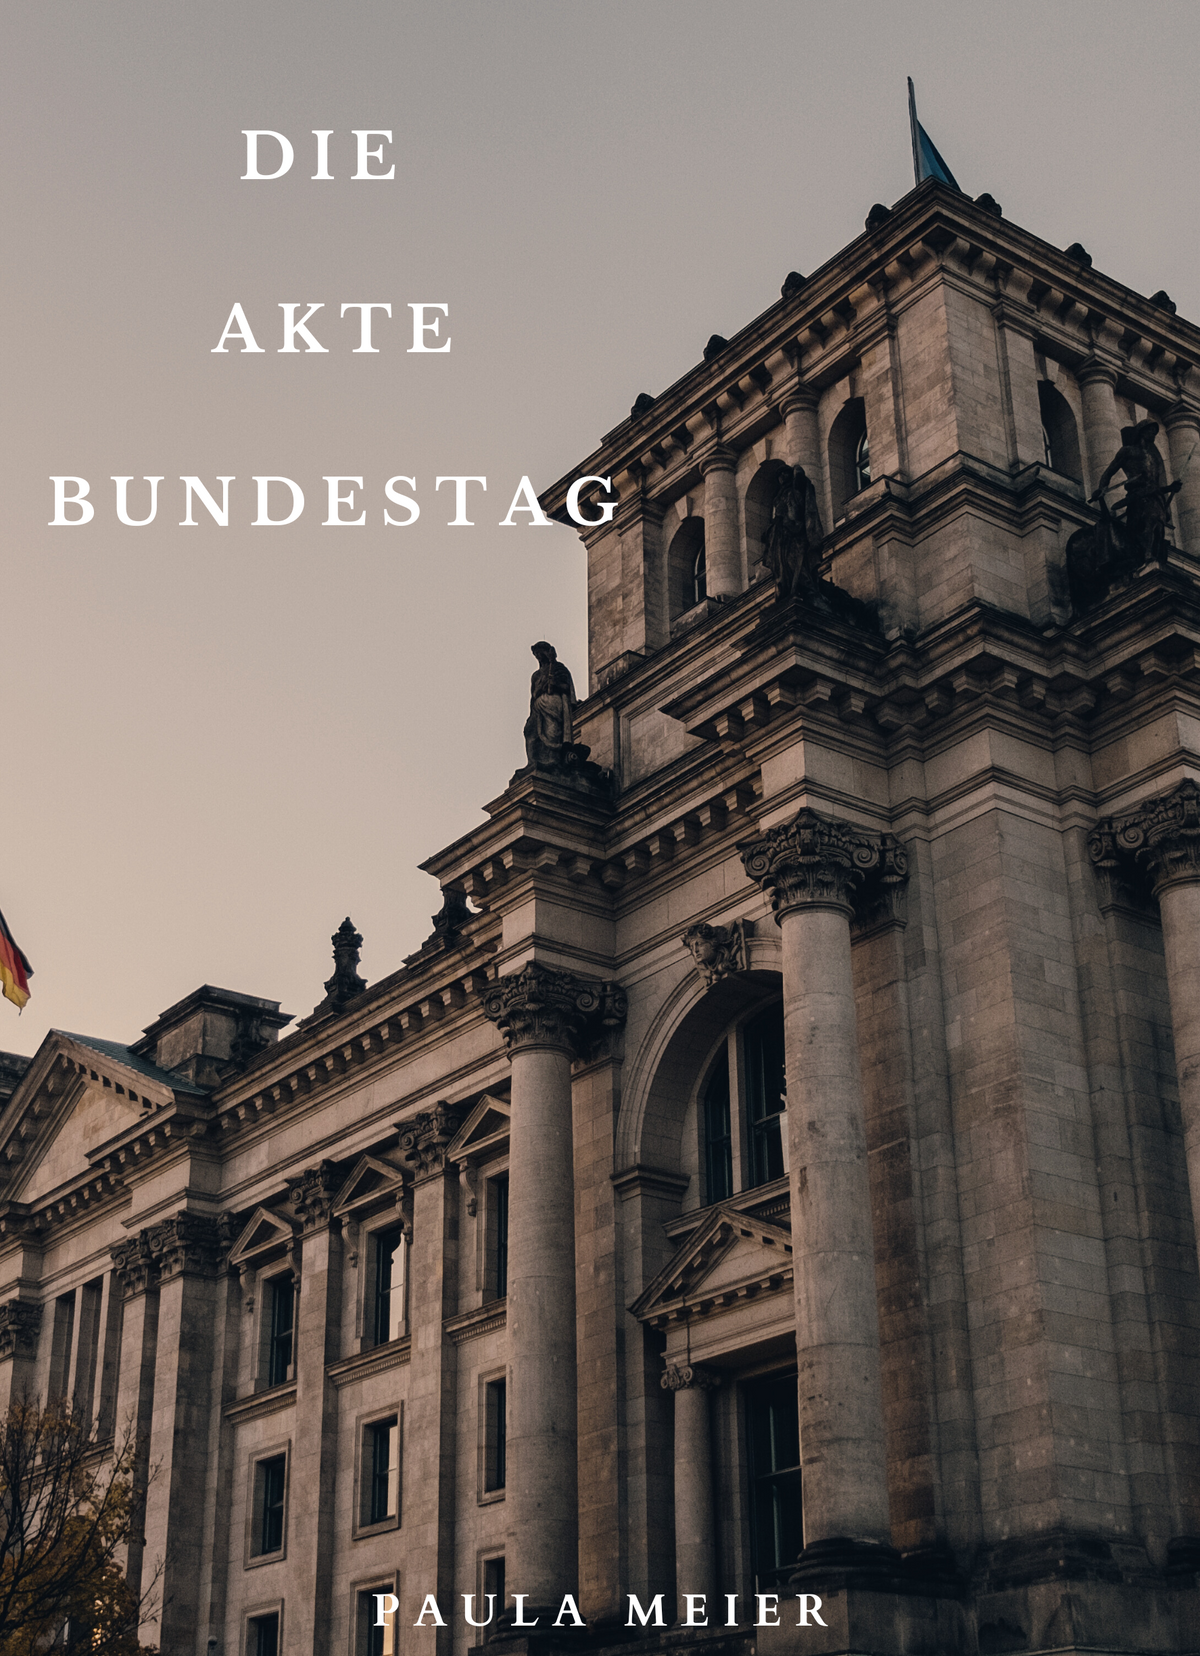 Die Akte Bundestag